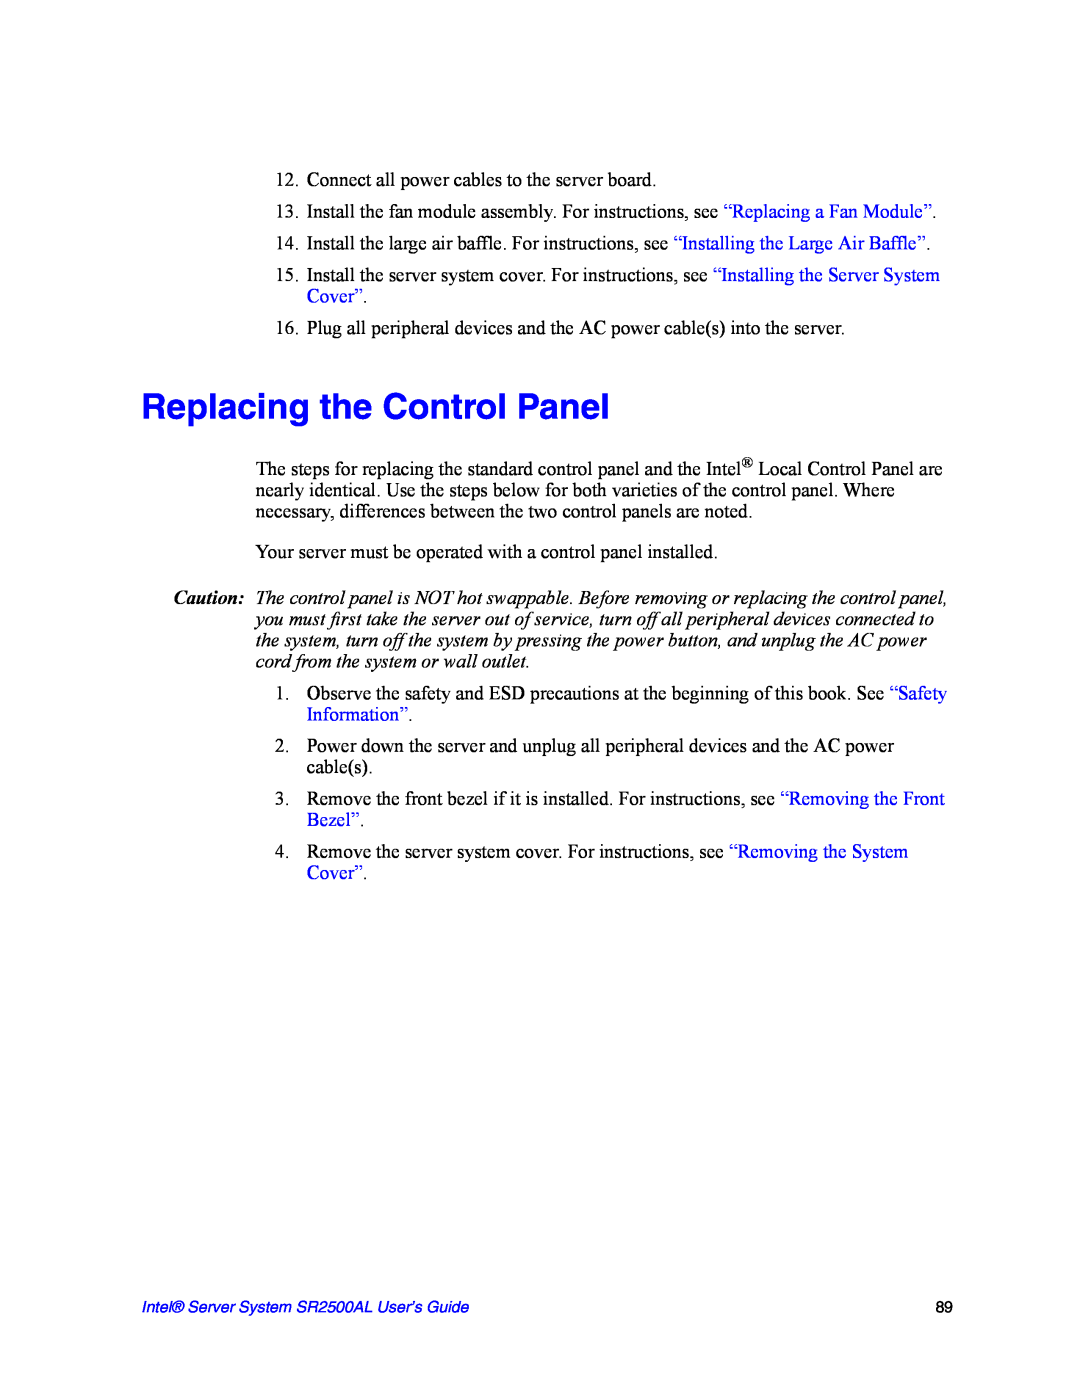 Intel SR2500AL manual Replacing the Control Panel 